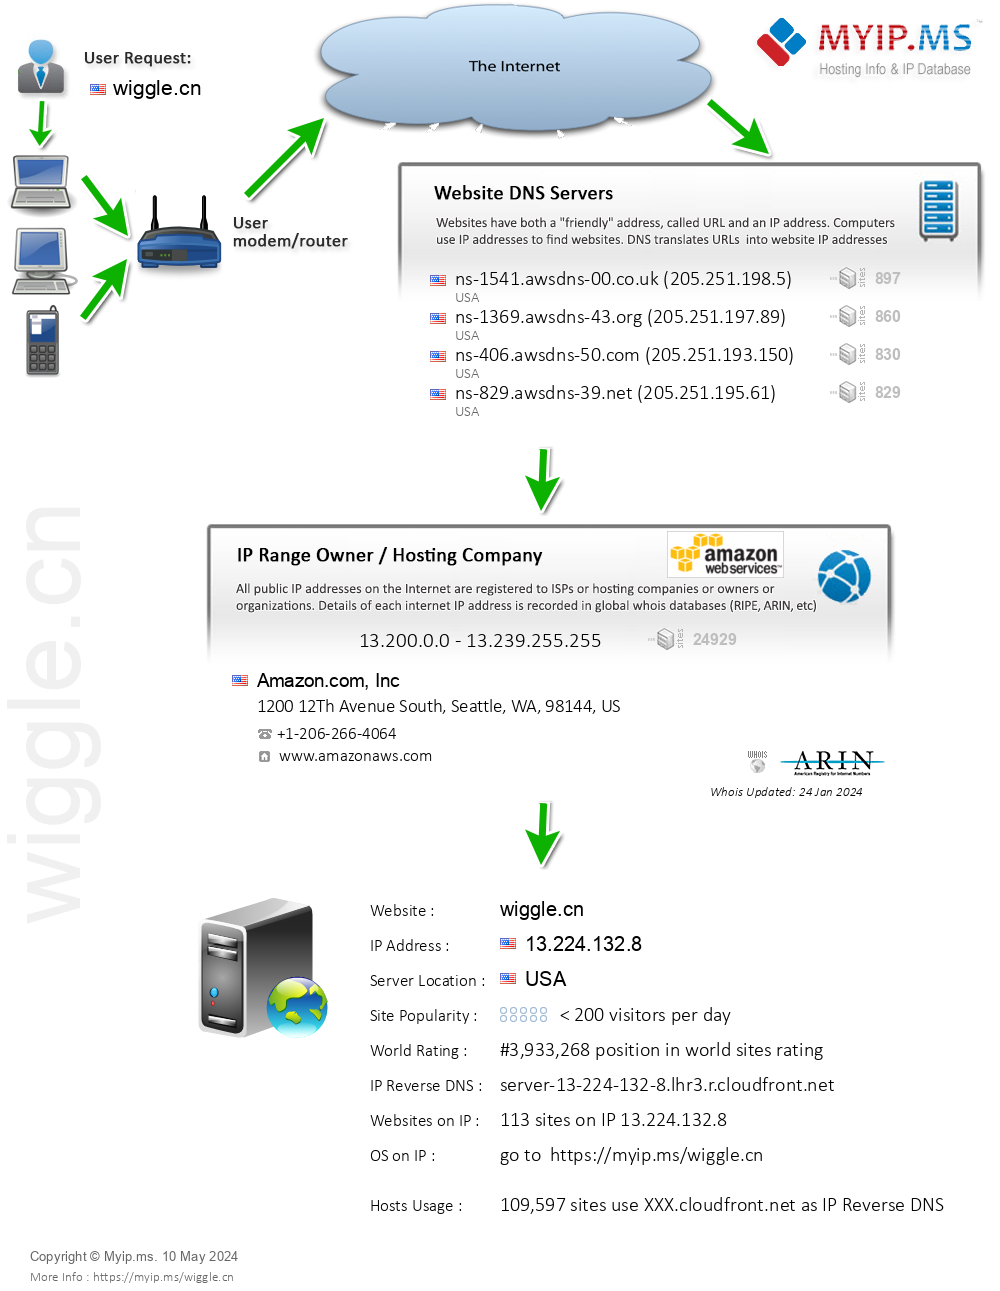 Wiggle.cn - Website Hosting Visual IP Diagram